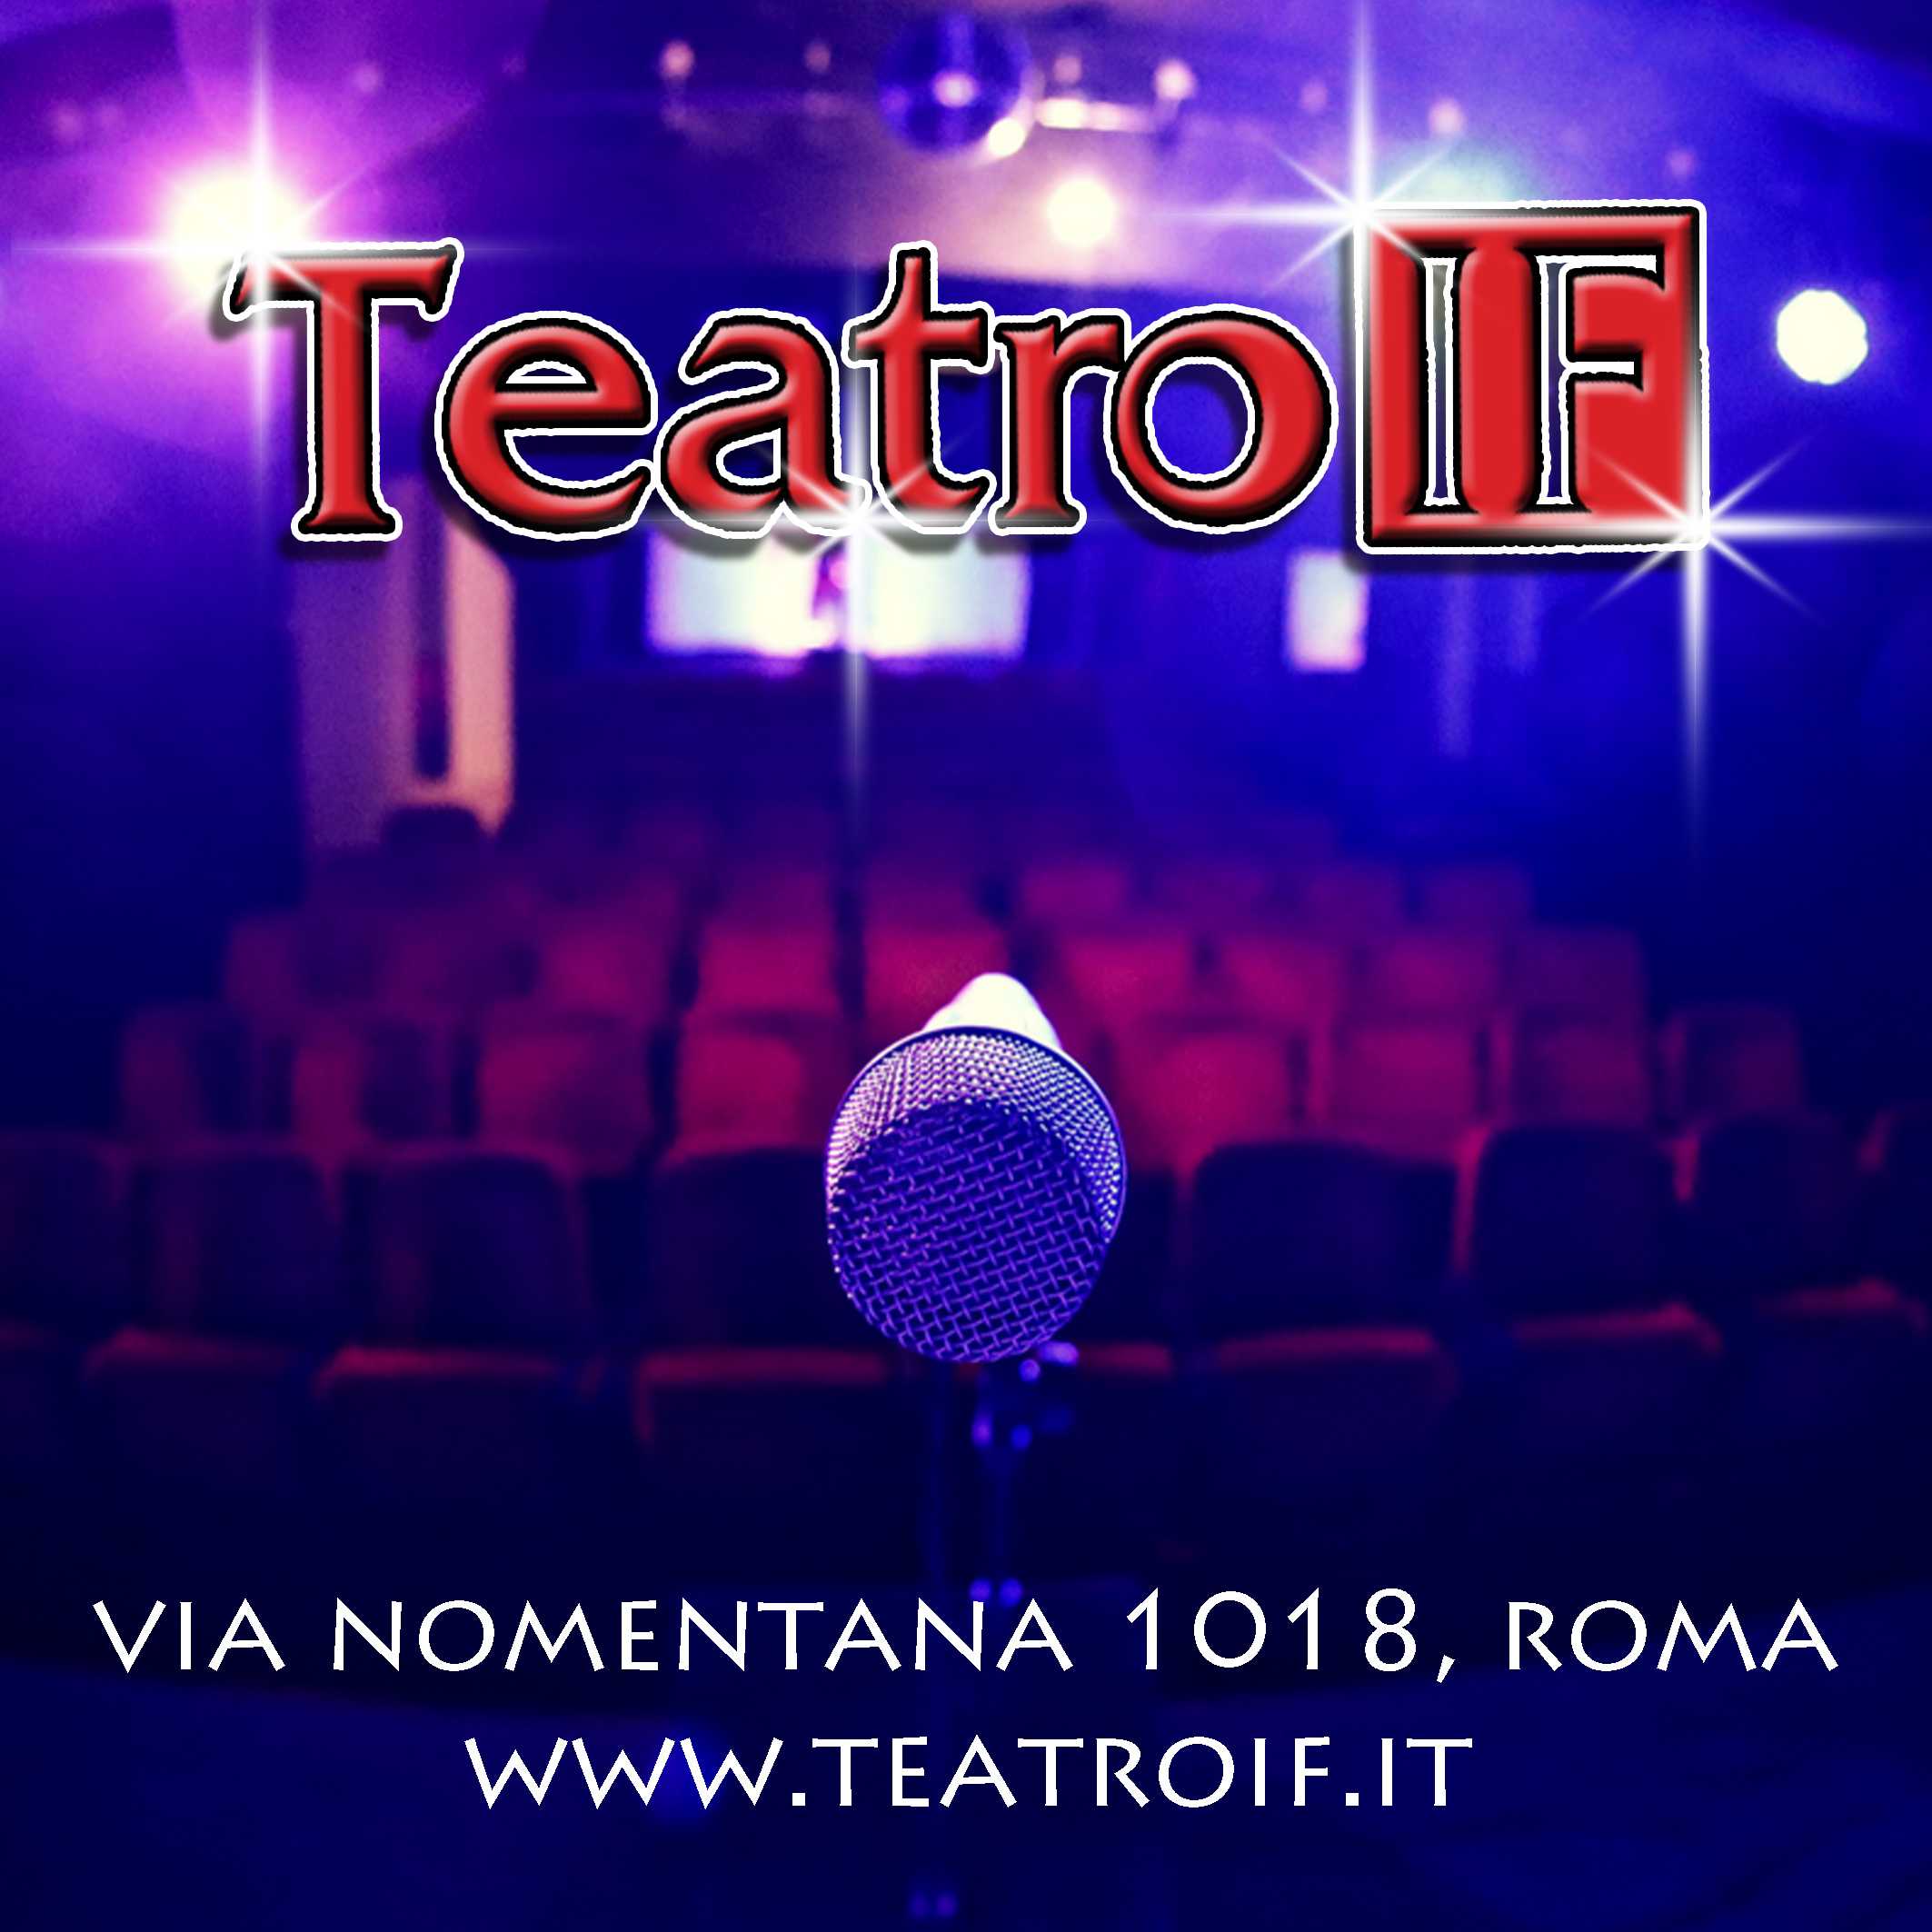 (c) Teatroif.it